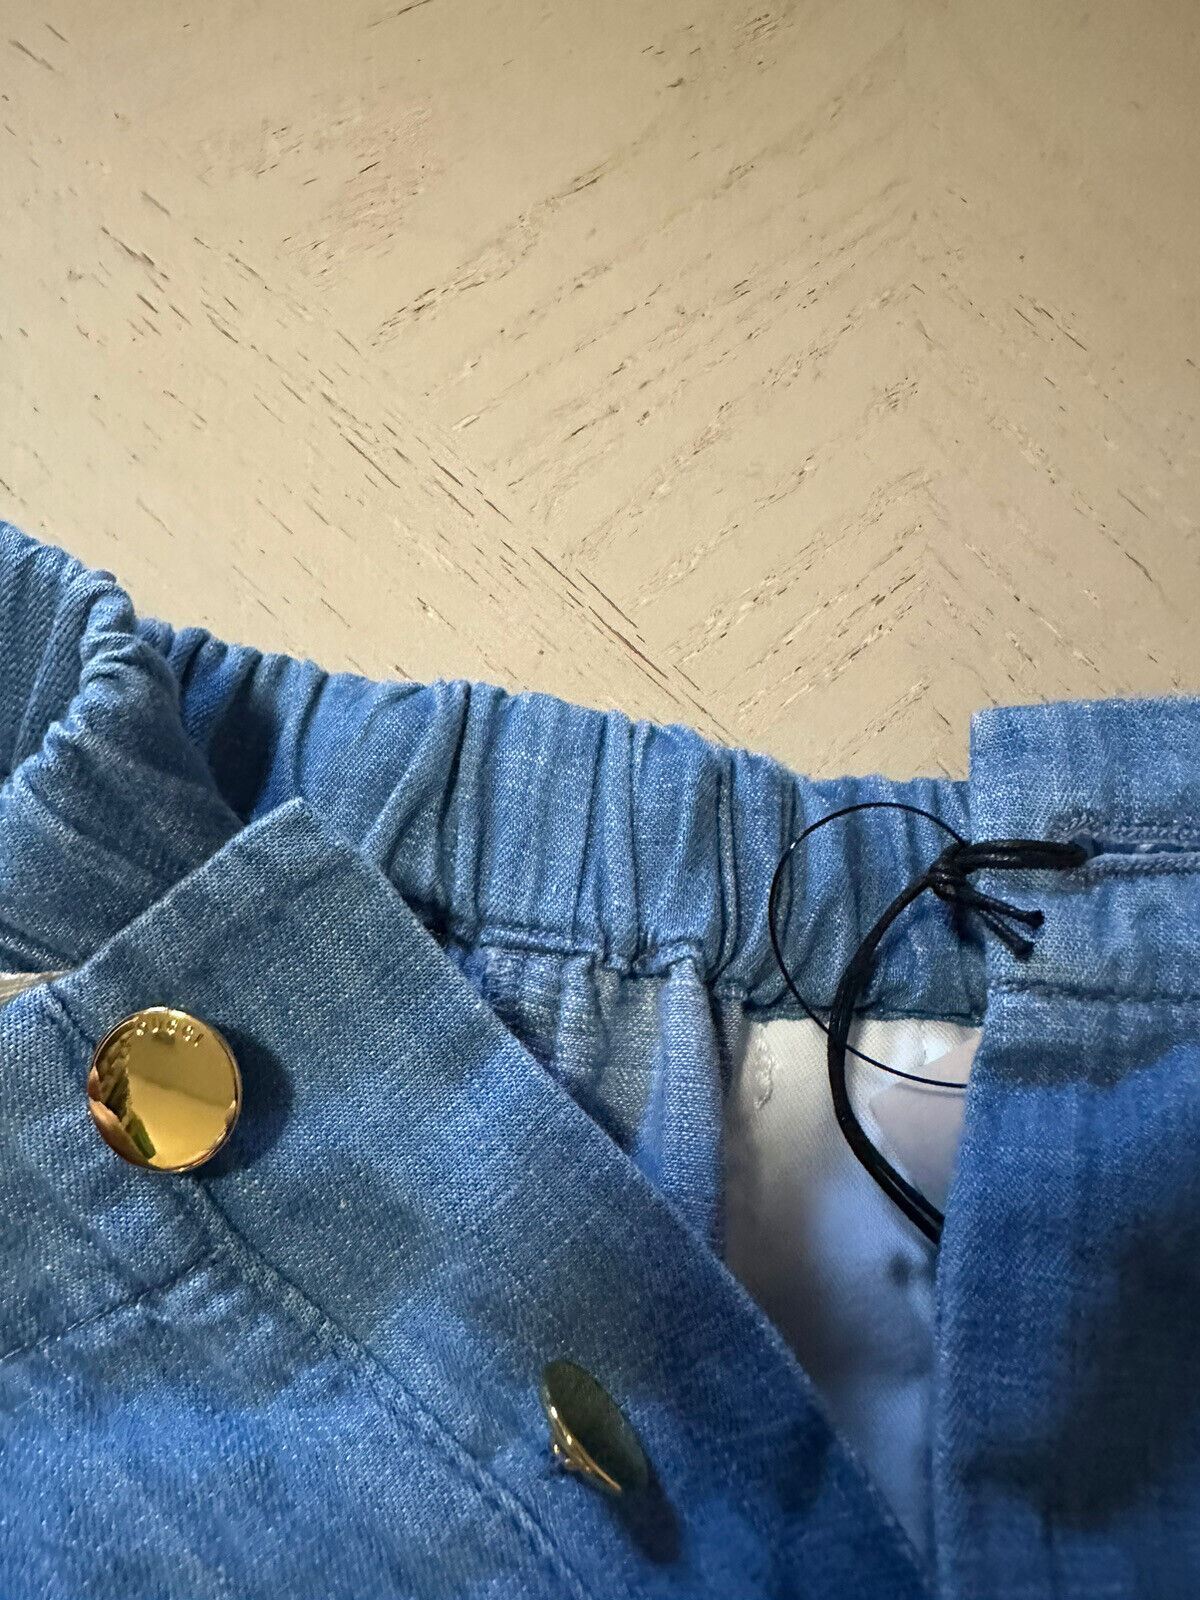 Новый мужской комплект из потертых джинсовых шорт и рубашки Gucci за 1980 долларов США, синий цвет 40 США/50 ЕС